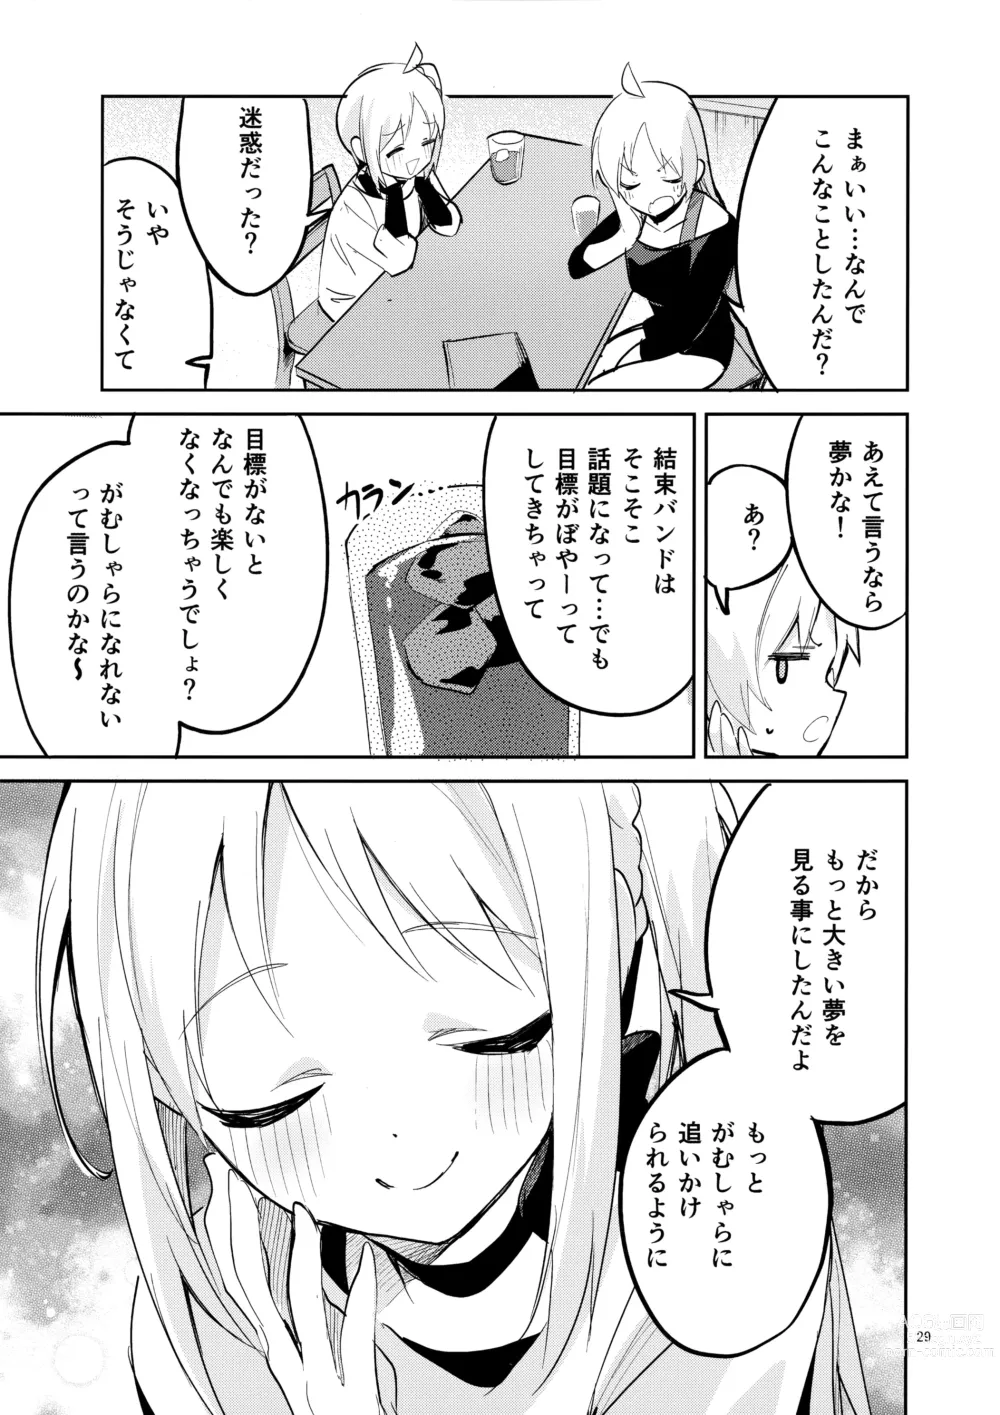 Page 28 of doujinshi Yume ga Uta o Utau no da!